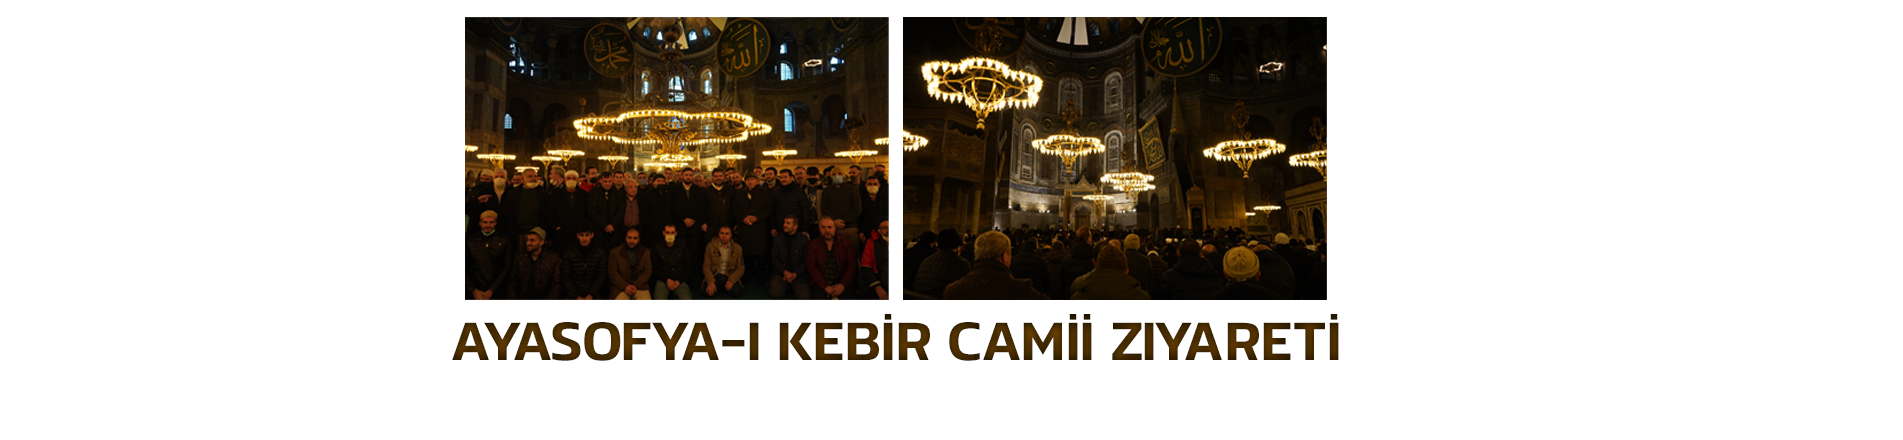 Ayasofya-i Kebir Cami-i ziyareti